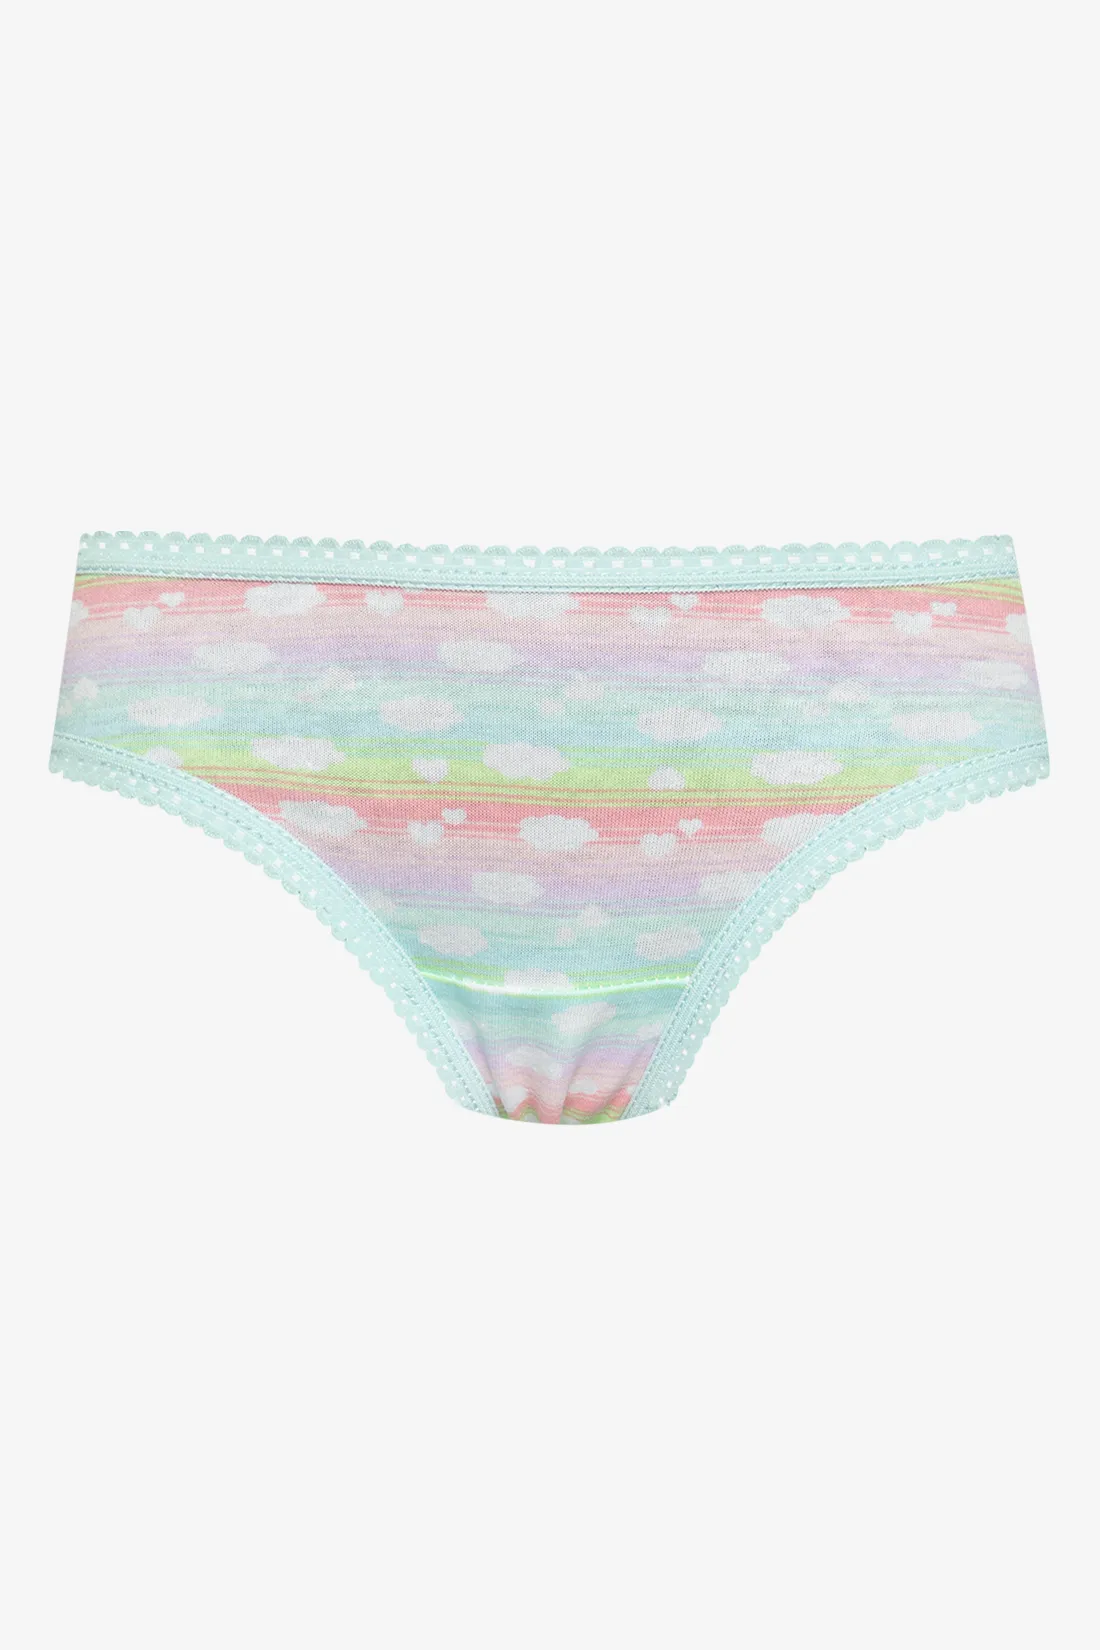 7 Pack unicorn bikini panties multi - GIRLS 2-8 YEARS Underwear